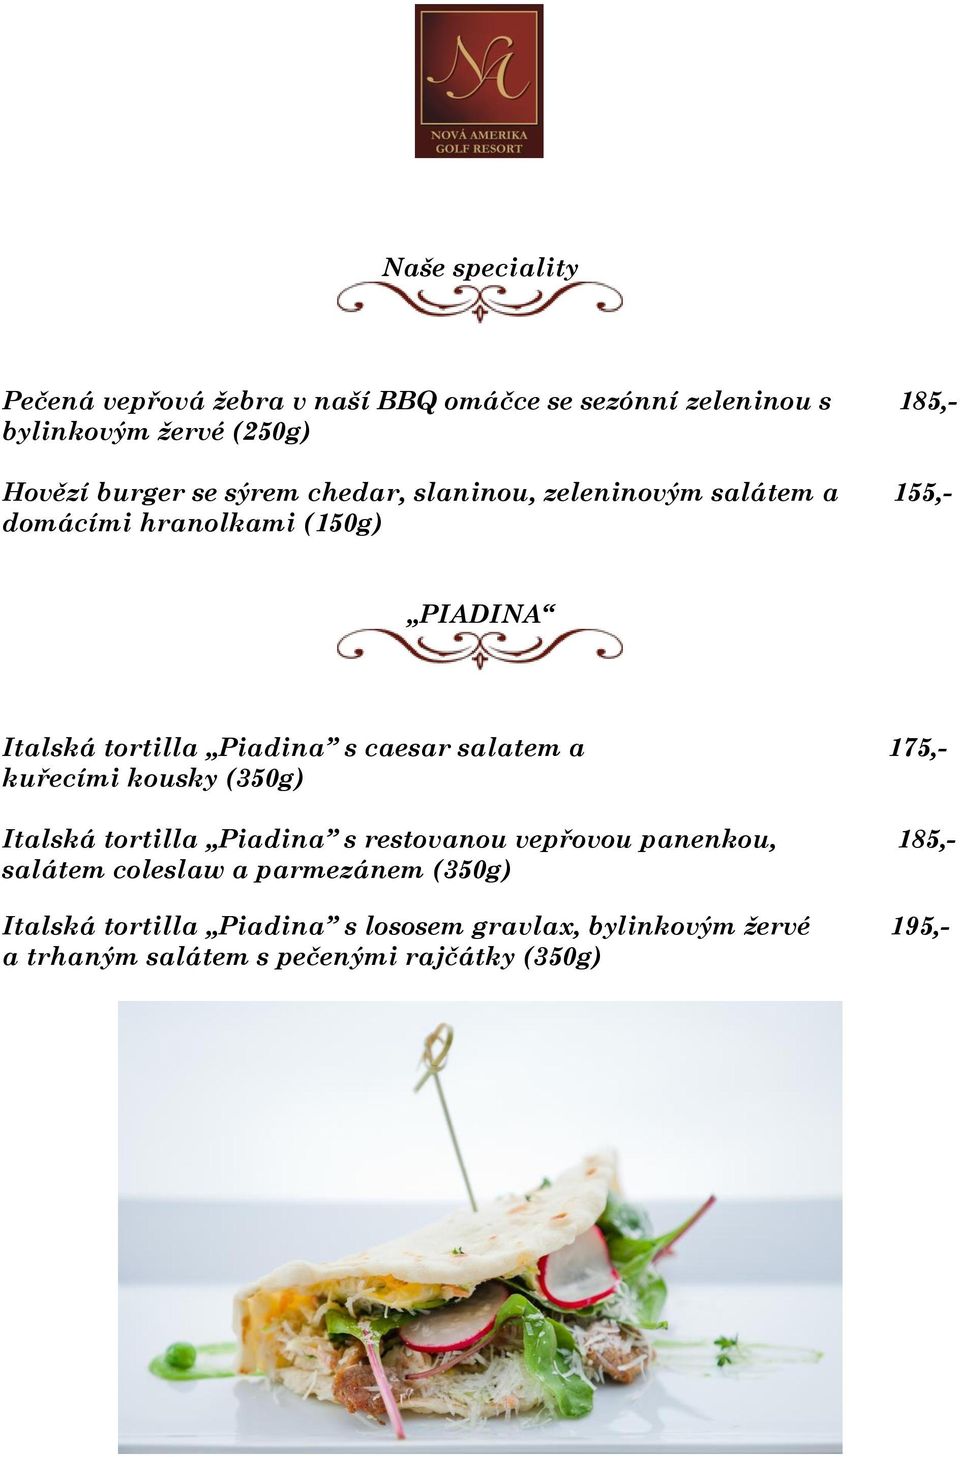 salatem a 175,- kuřecími kousky (350g) Italská tortilla Piadina s restovanou vepřovou panenkou, 185,- salátem coleslaw a